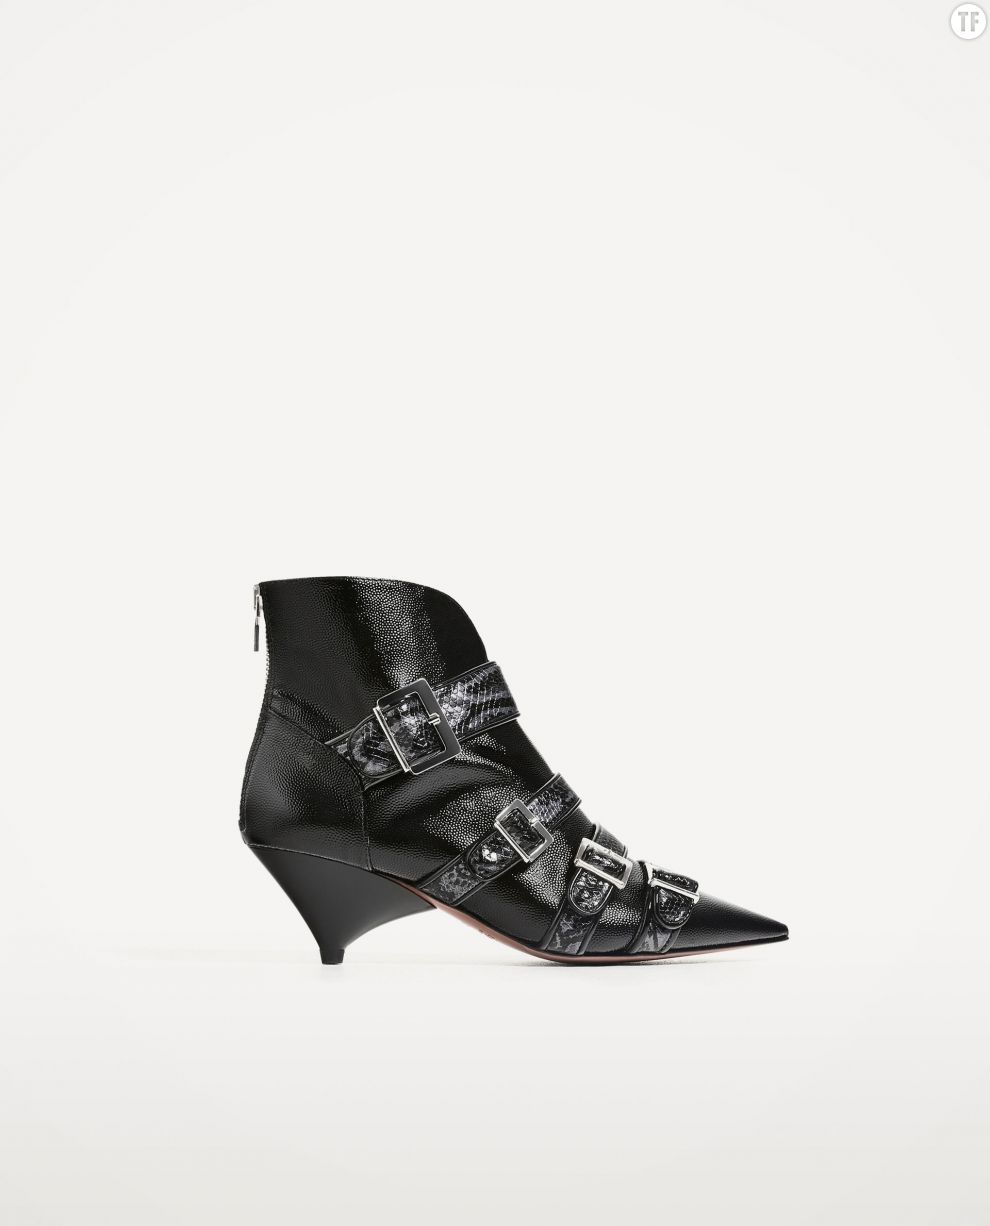  Bottines &quot;cone heels&quot; Zara, 79,95 euros 